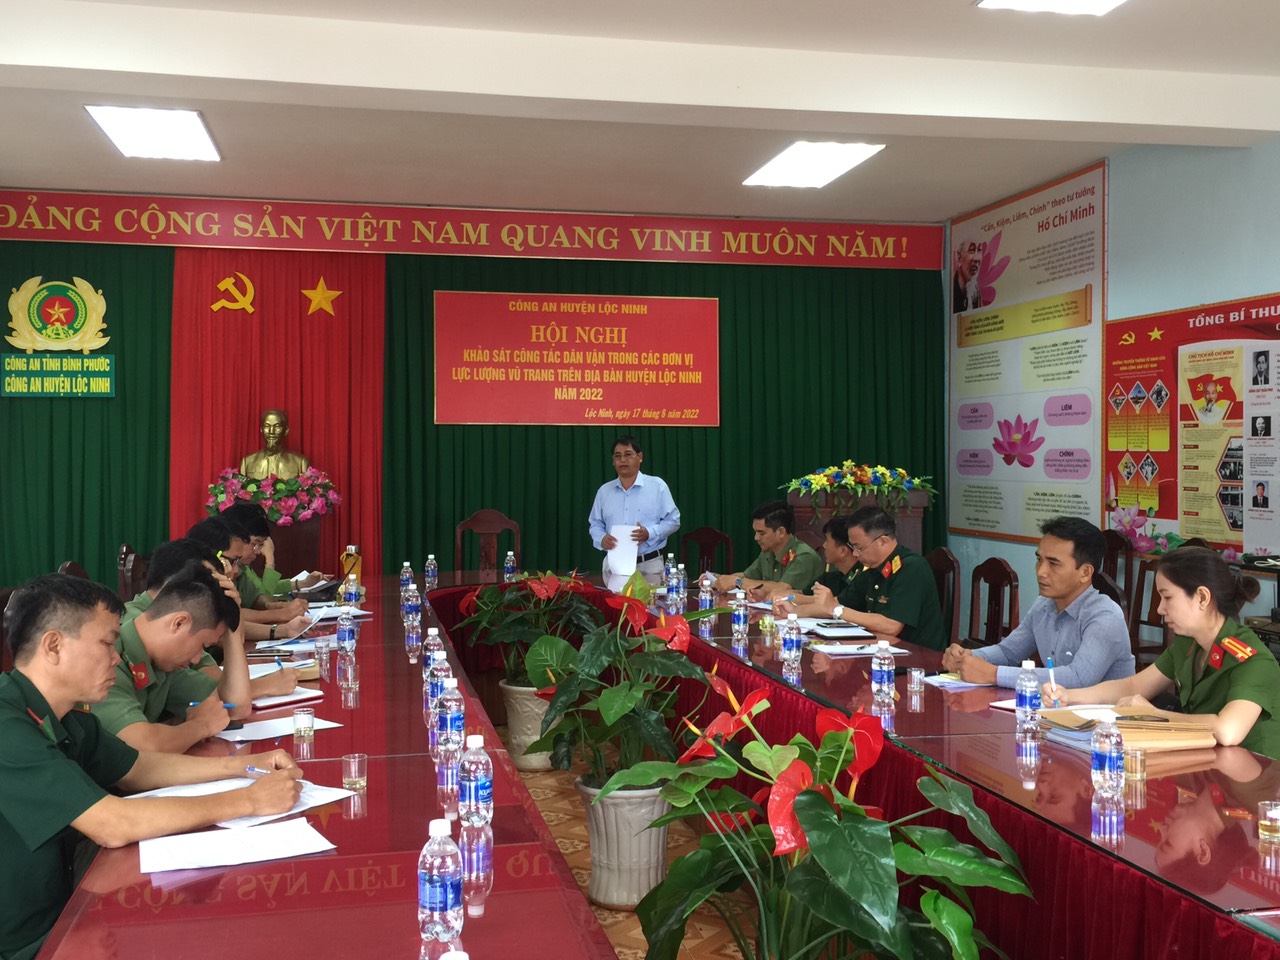 Đồng chí Ma Ly Phước – TUV, Phó trưởng ban Thường trực Ban Dân vận tỉnh ủy, Trưởng đoàn khảo sát phát biểu kết luận buổi làm việc tại Công an huyện Lộc Ninh